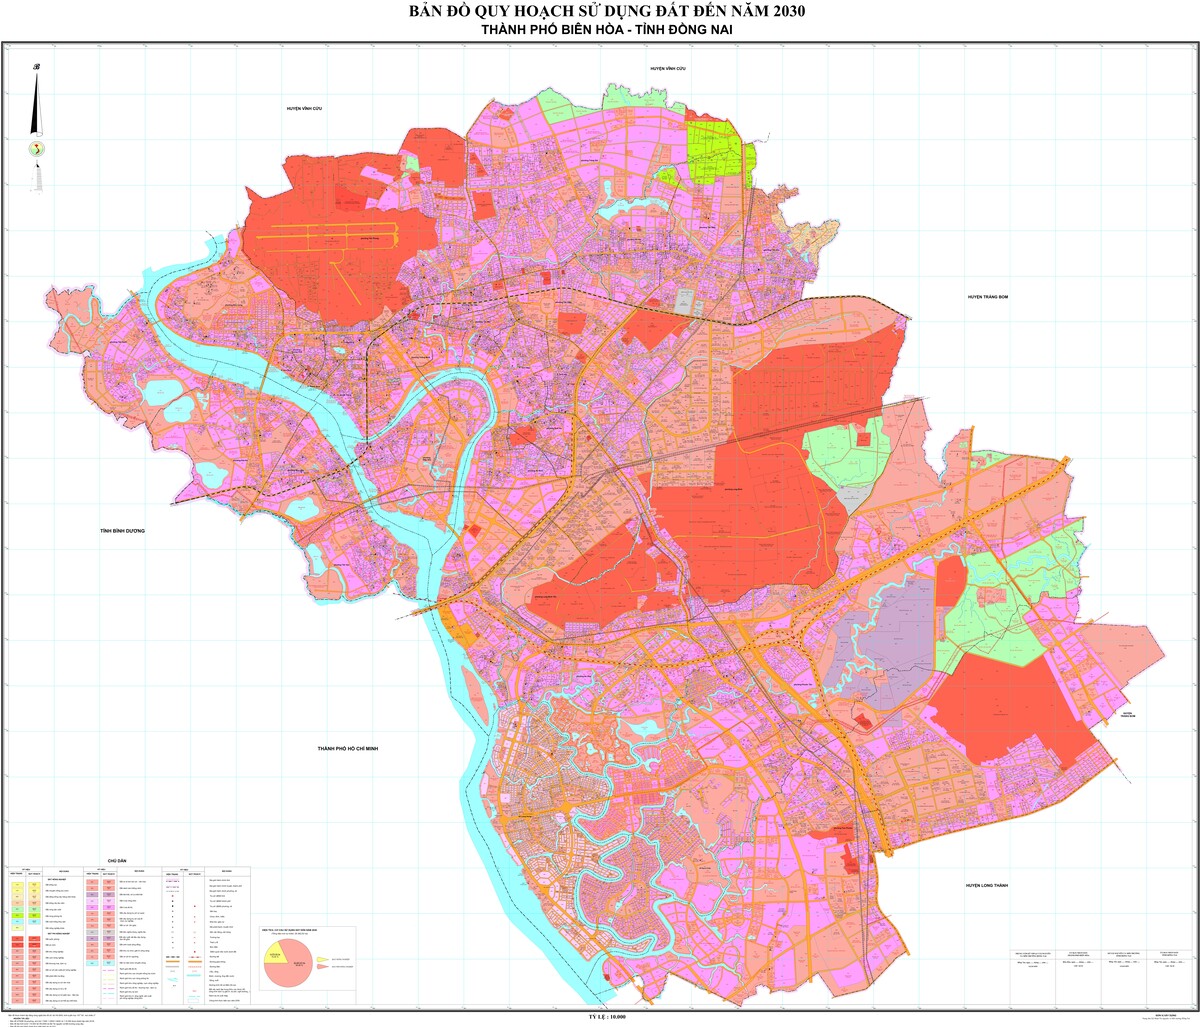 Bản Đồ Quy Hoạch Thành Phố Biên Hòa, Tỉnh Đồng Nai Đến Năm 2030 - Tân Đại  Thành Group